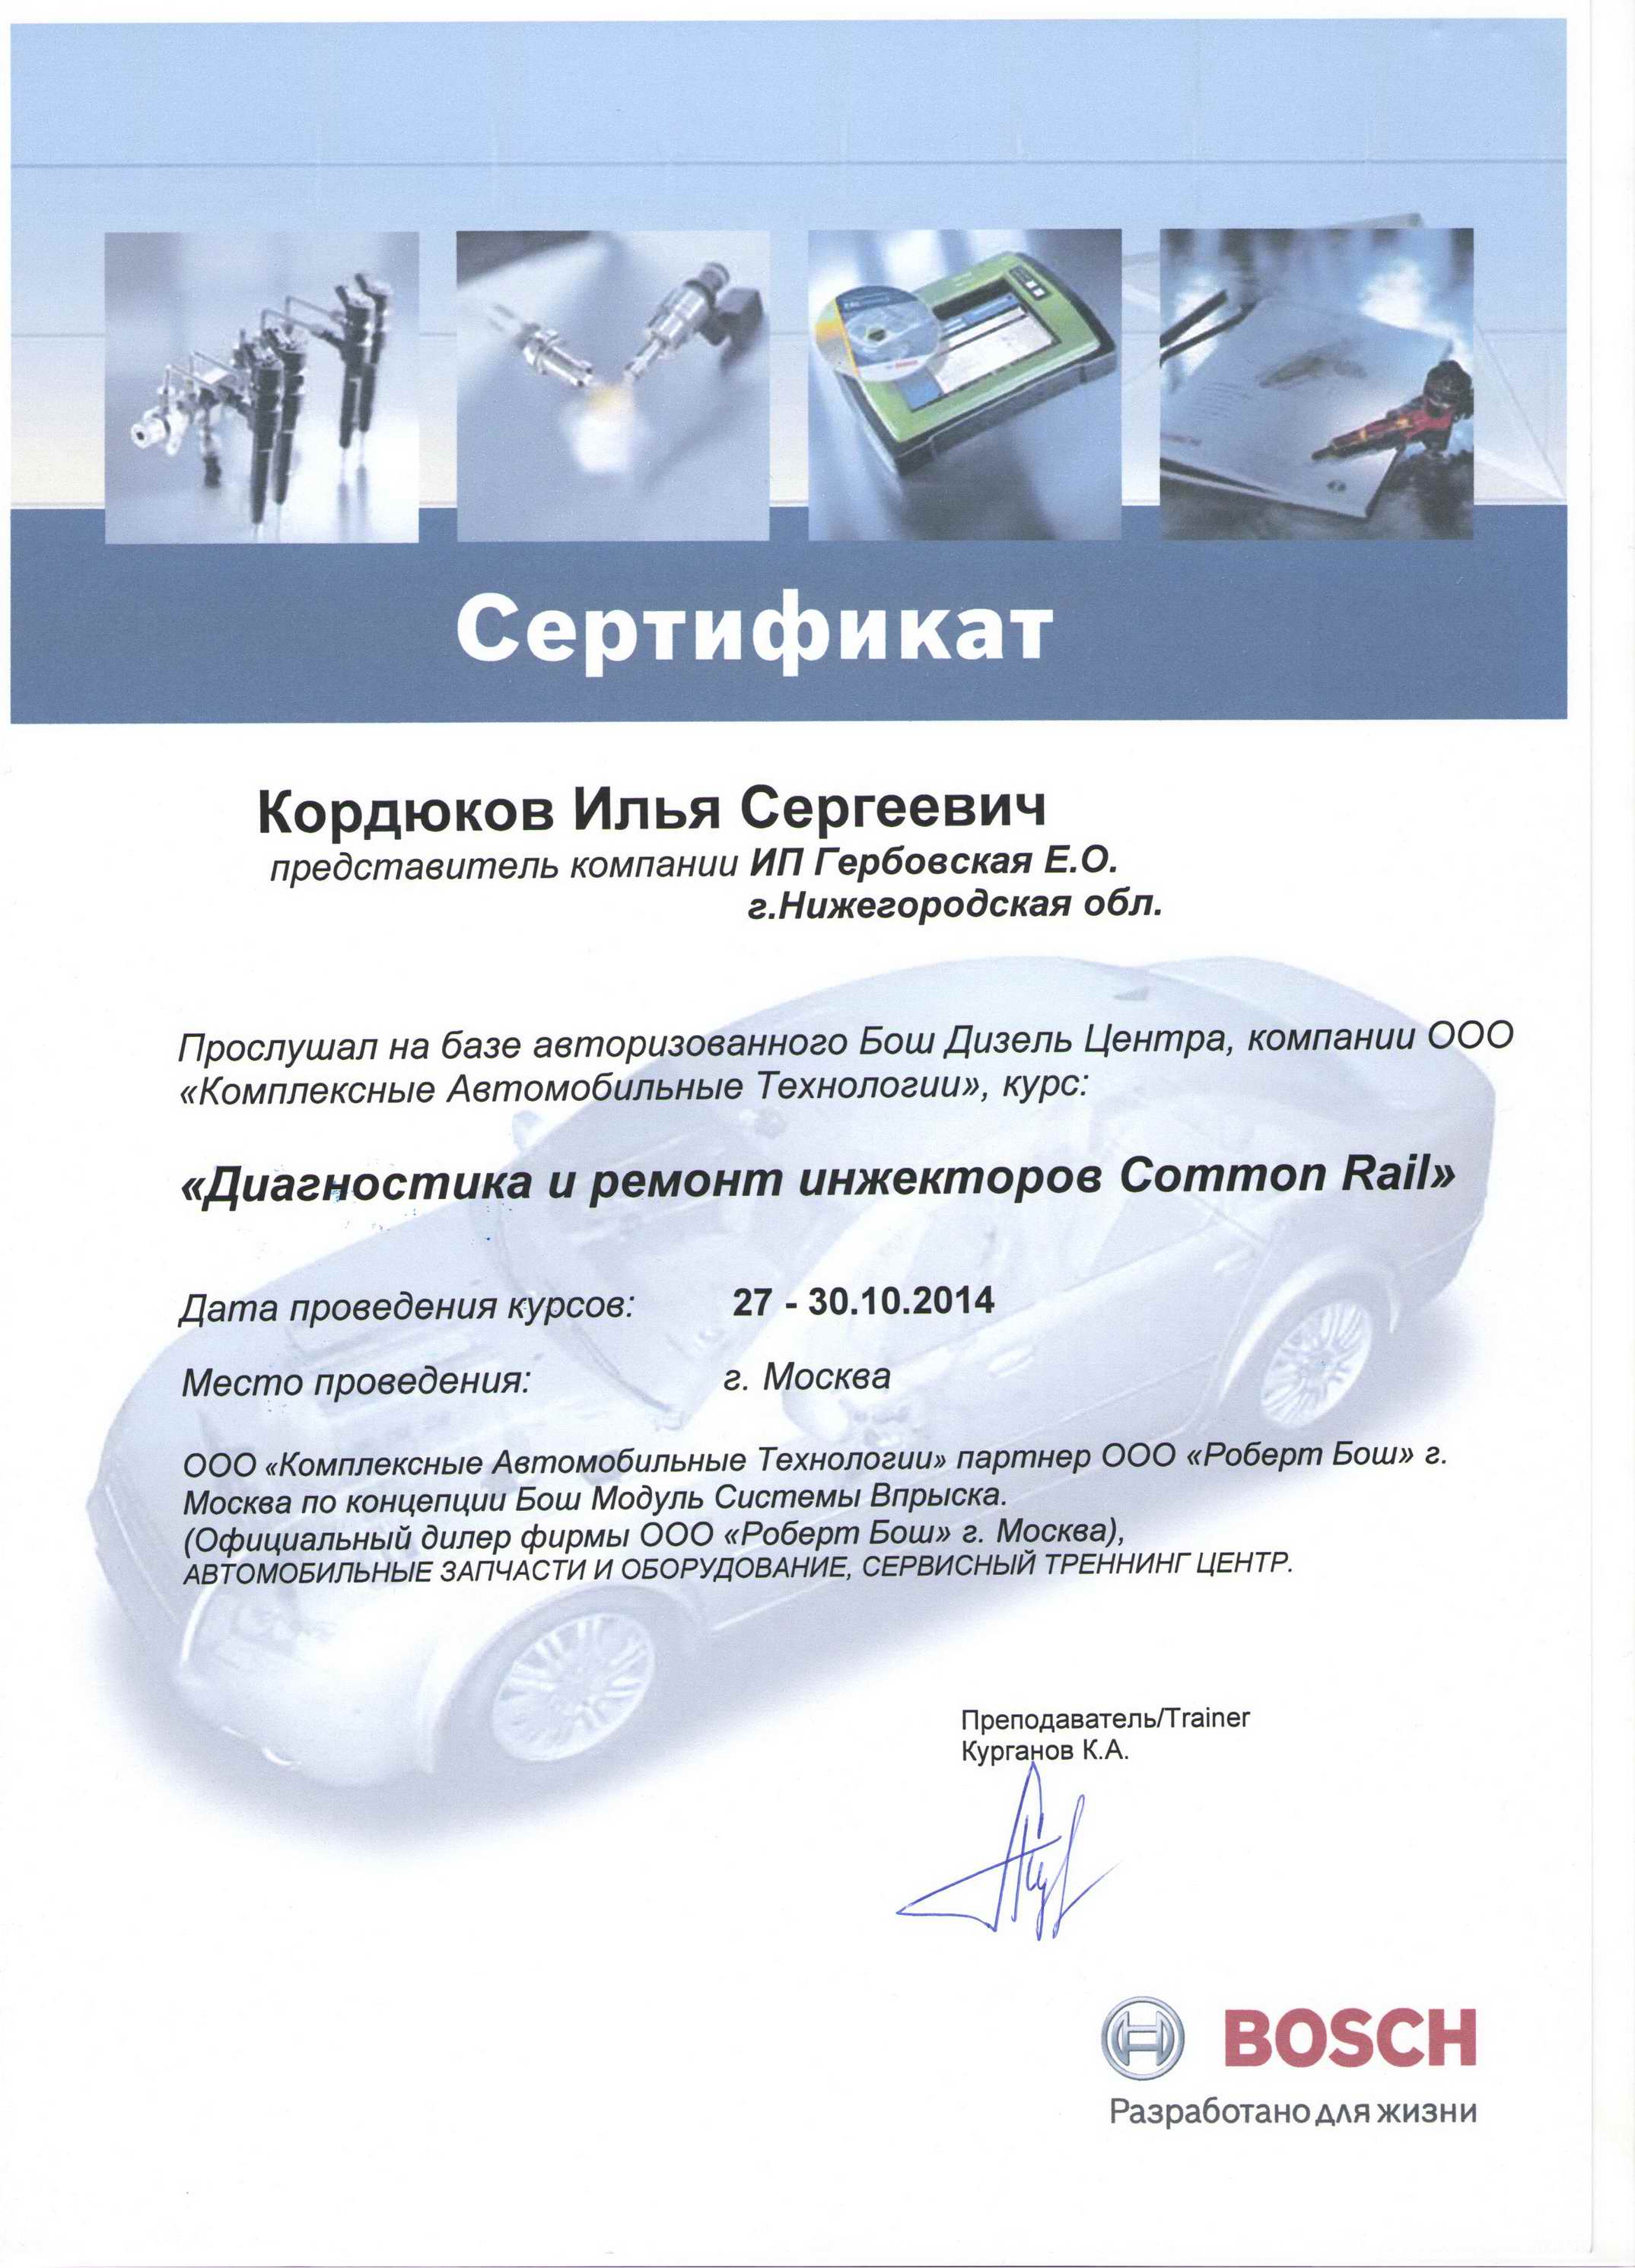 Сертификат "Диагностика и ремонт систем Common Rail"